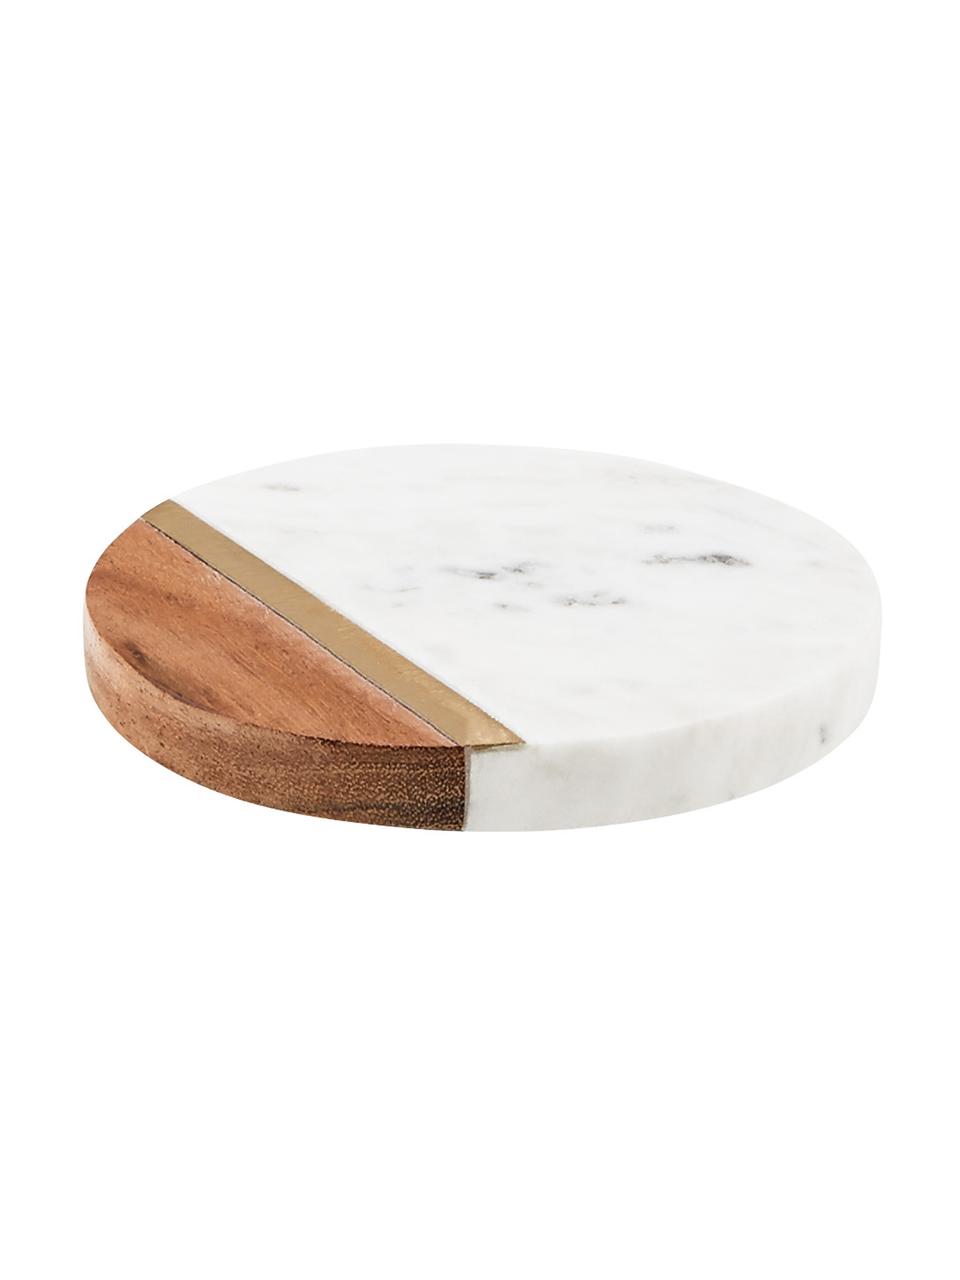 Podkładka z marmuru Marble Kitchen, 4 szt., Marmur, drewno akacjowe, mosiądz, Biały, marmurowy, drewno akacjowe, odcienie złotego, Ø 10 x W 2 cm